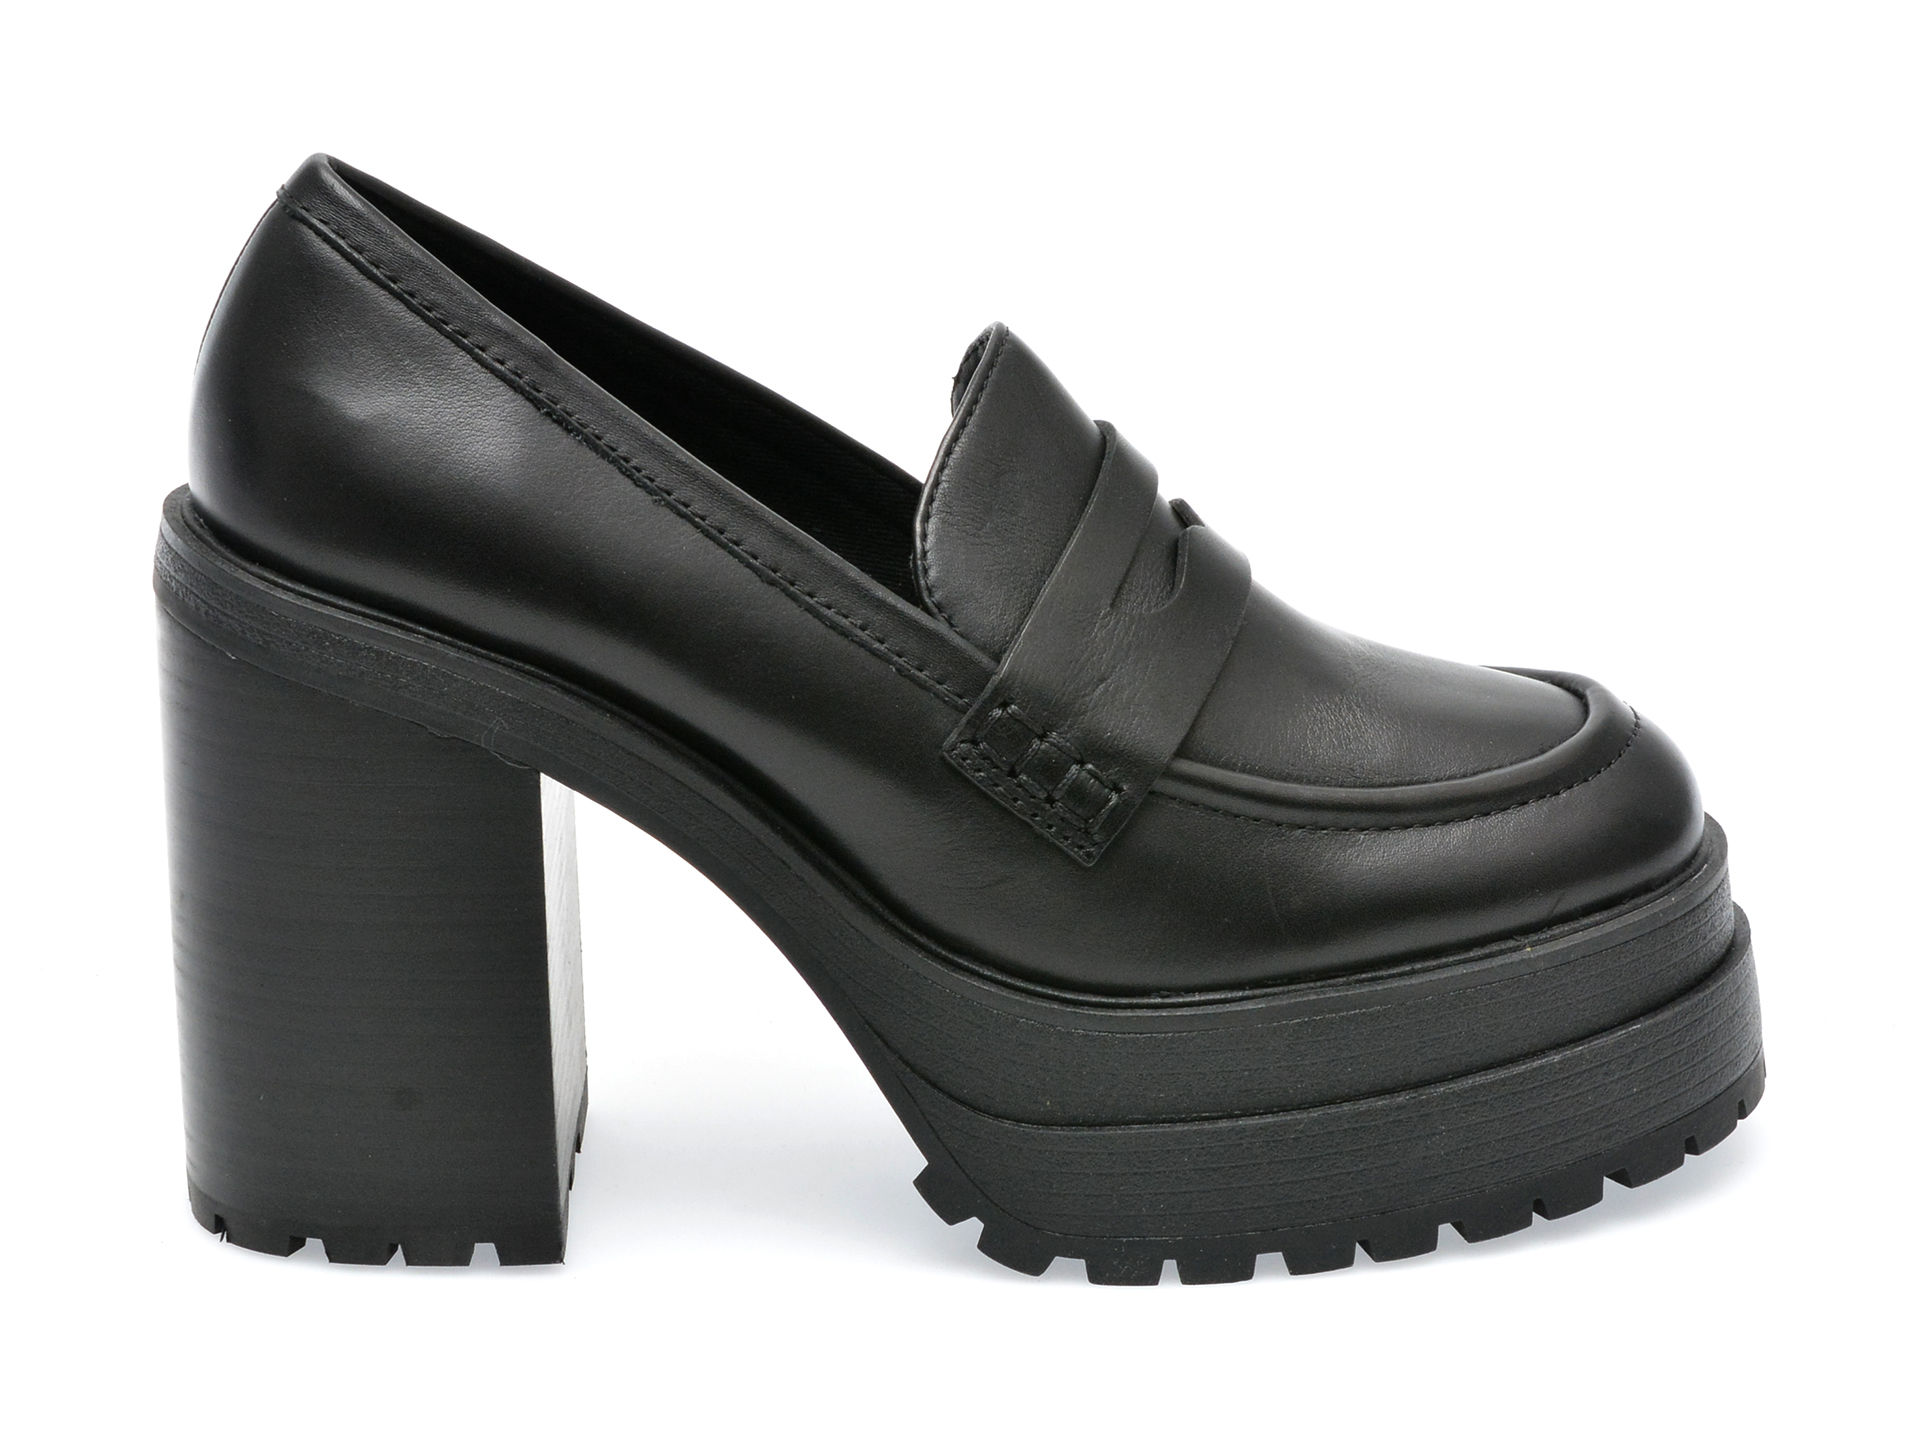 Poze Pantofi ALDO negri, BIGSOUL001, din piele naturala Tezyo